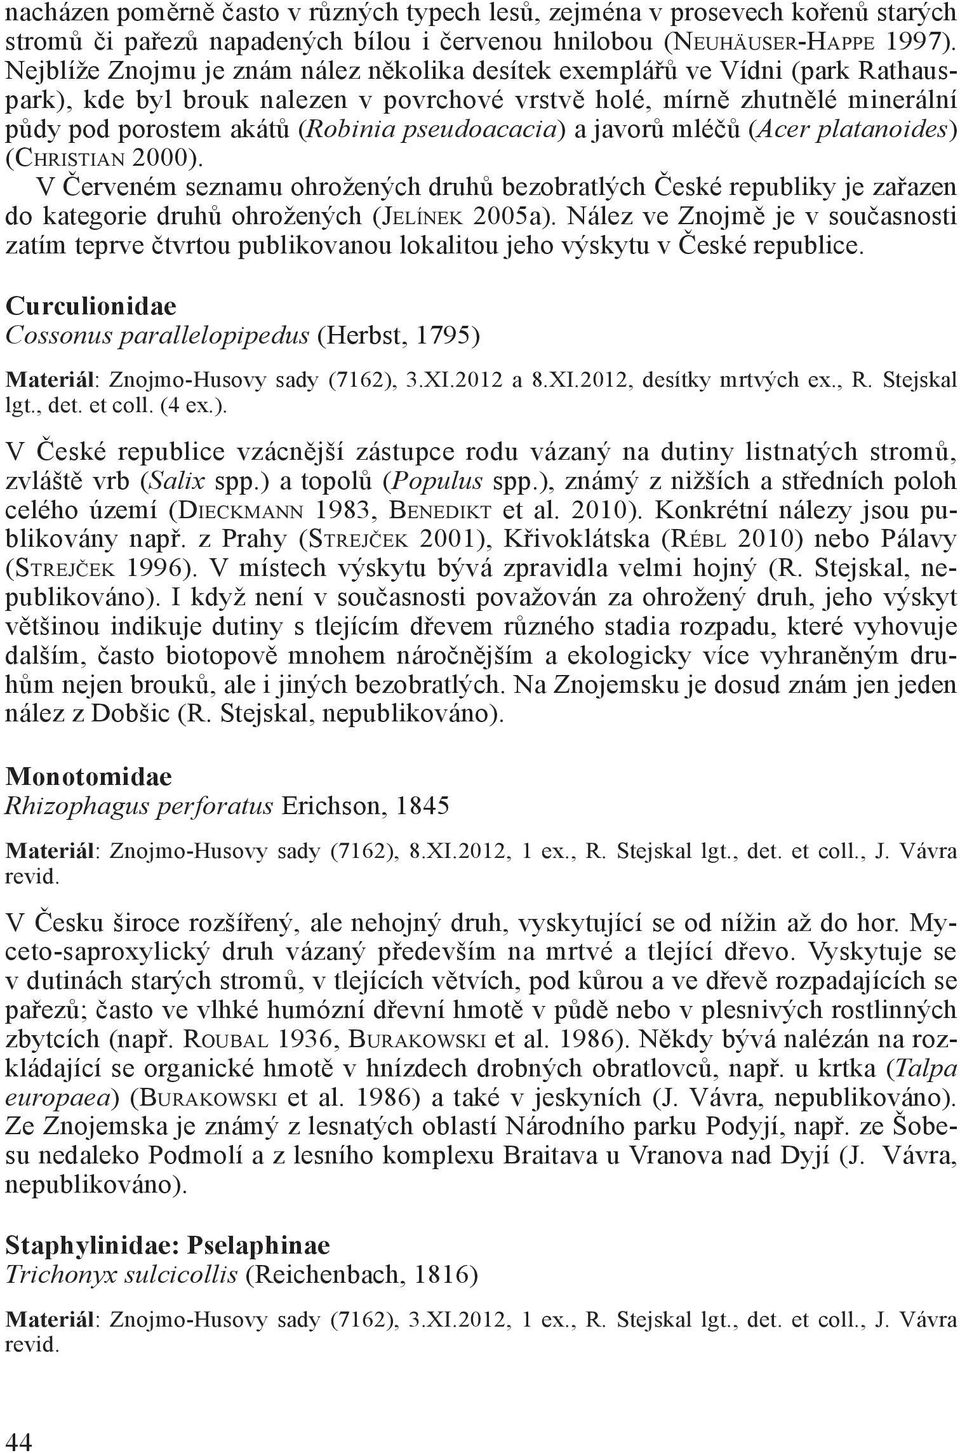 pseudoacacia) a javorů mléčů (Acer platanoides) (Christian 2000). V Červeném seznamu ohrožených druhů bezobratlých České republiky je zařazen do kategorie druhů ohrožených (Je l í n e k 2005a).